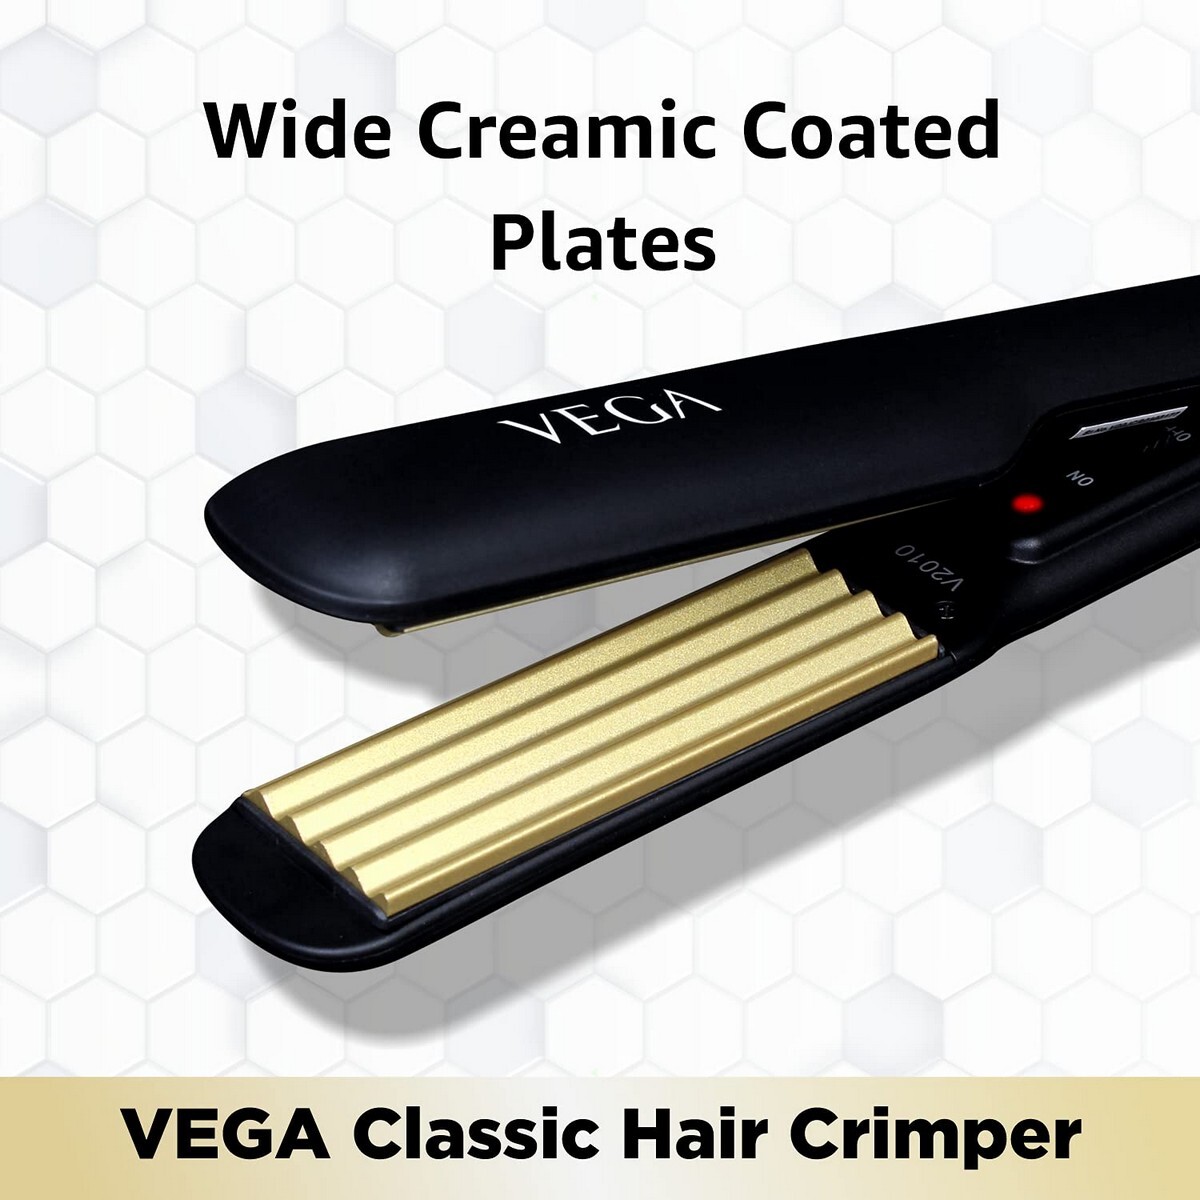 VEGA Classic Hair Crimper With Quick Heat Up & Ceramic Coated Plates, VHCR-01